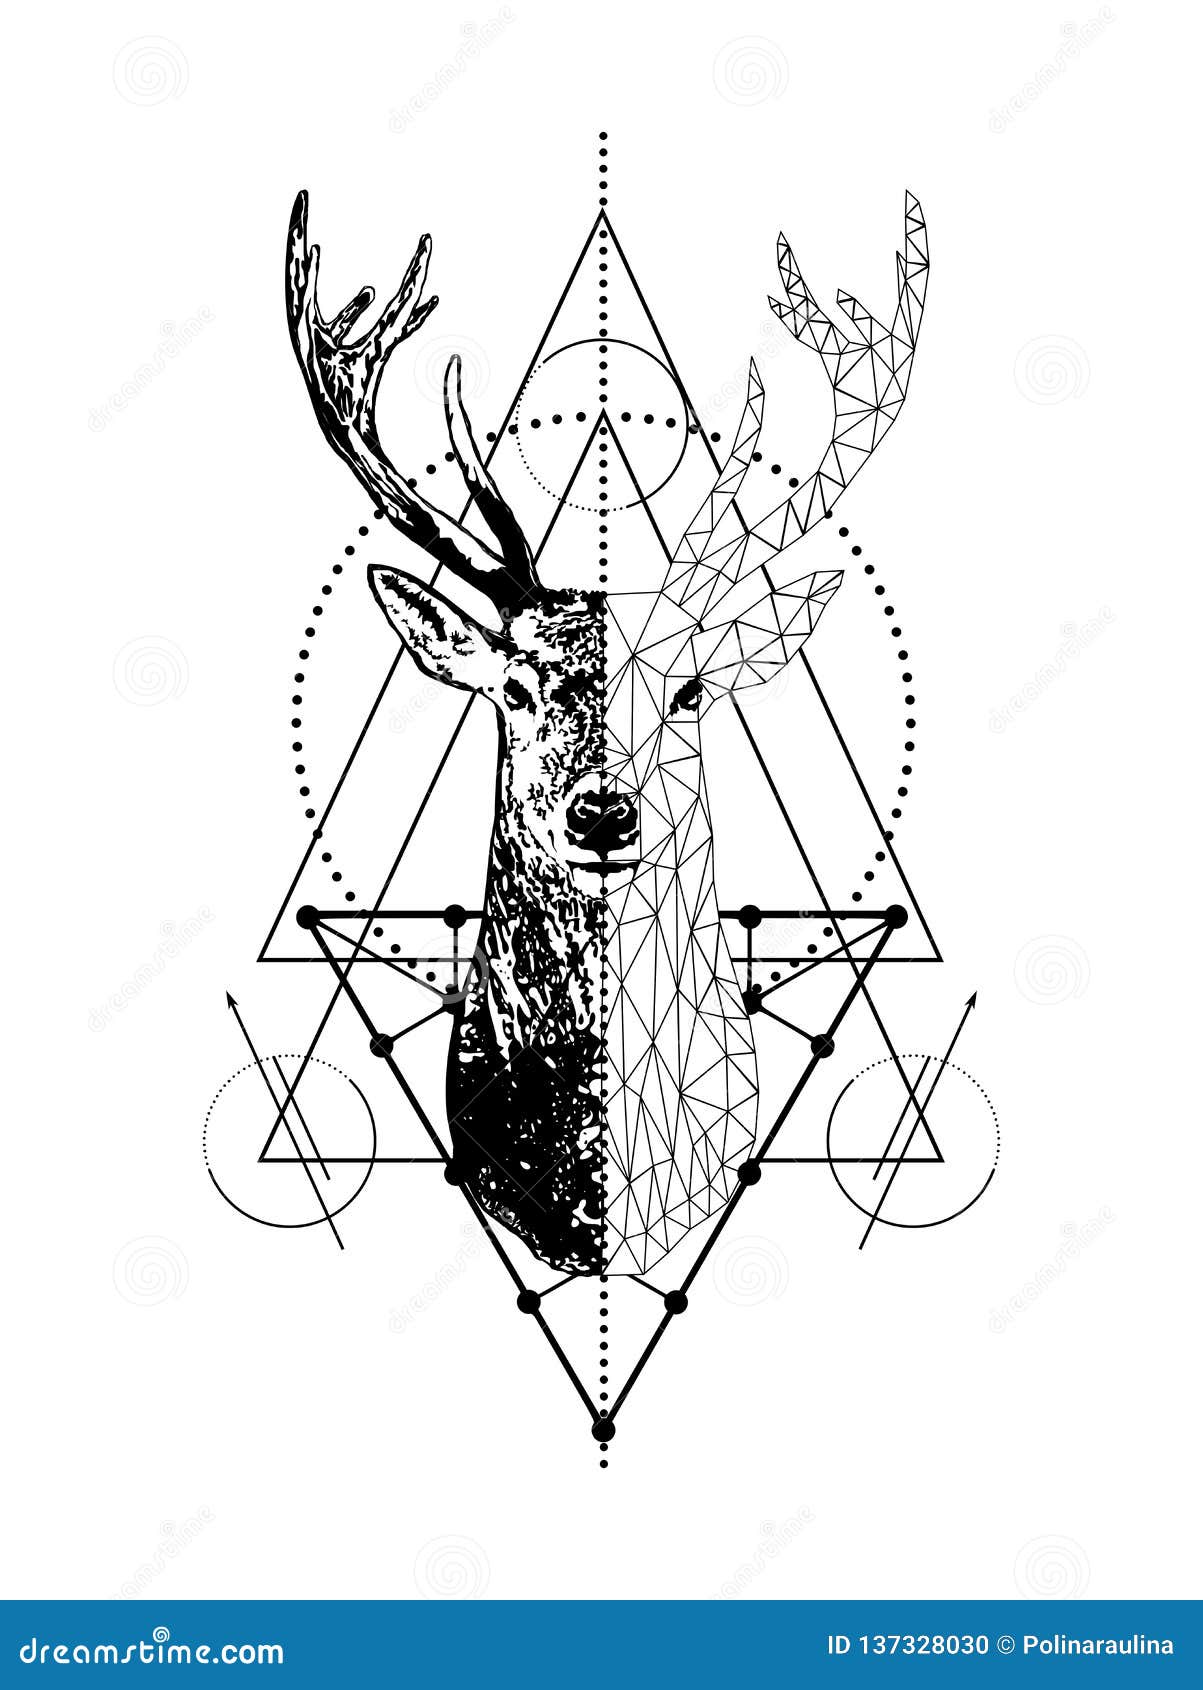 Geometric Deer Tattoos | Deer tattoo designs, Deer head tattoo, Geometric  tattoo